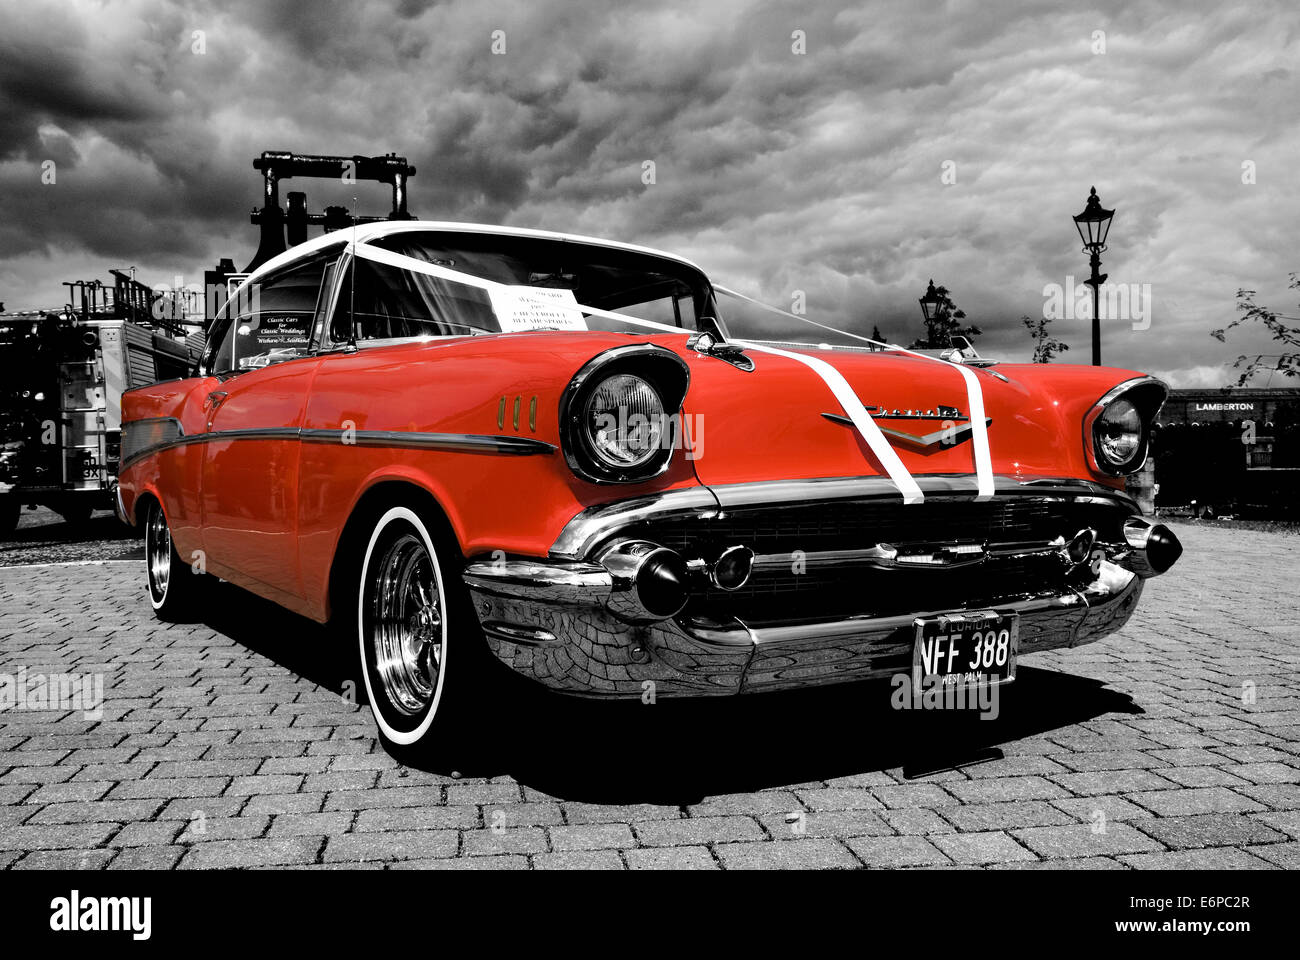 American Vintage voiture Chevrolet à l'affiche au Musée Summerlee Coatbridge. Banque D'Images